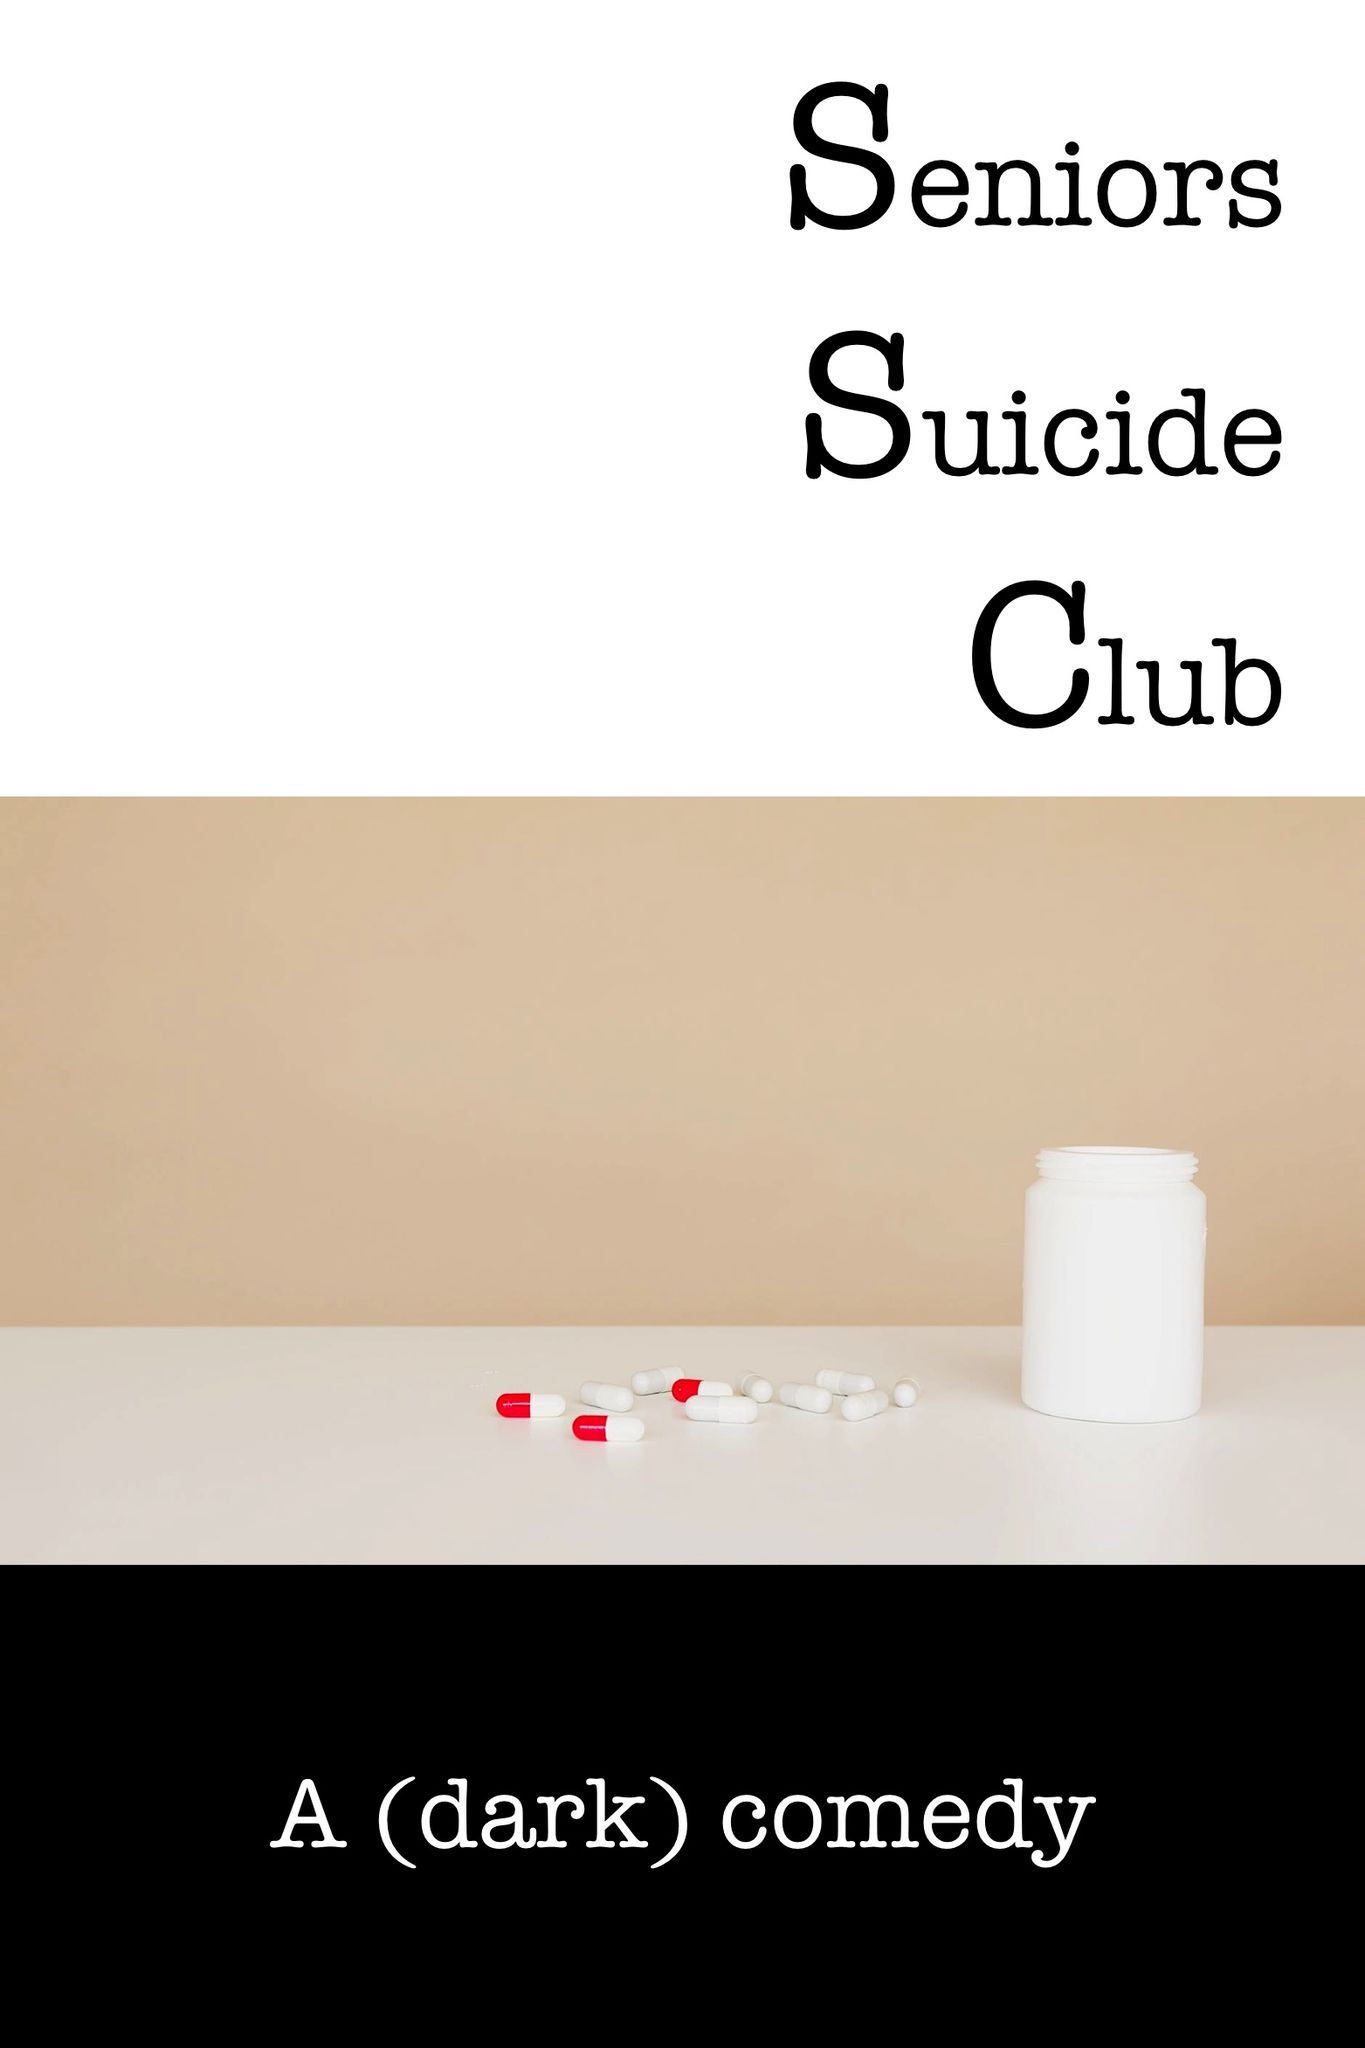 SENIORS SUICIDE CLUB